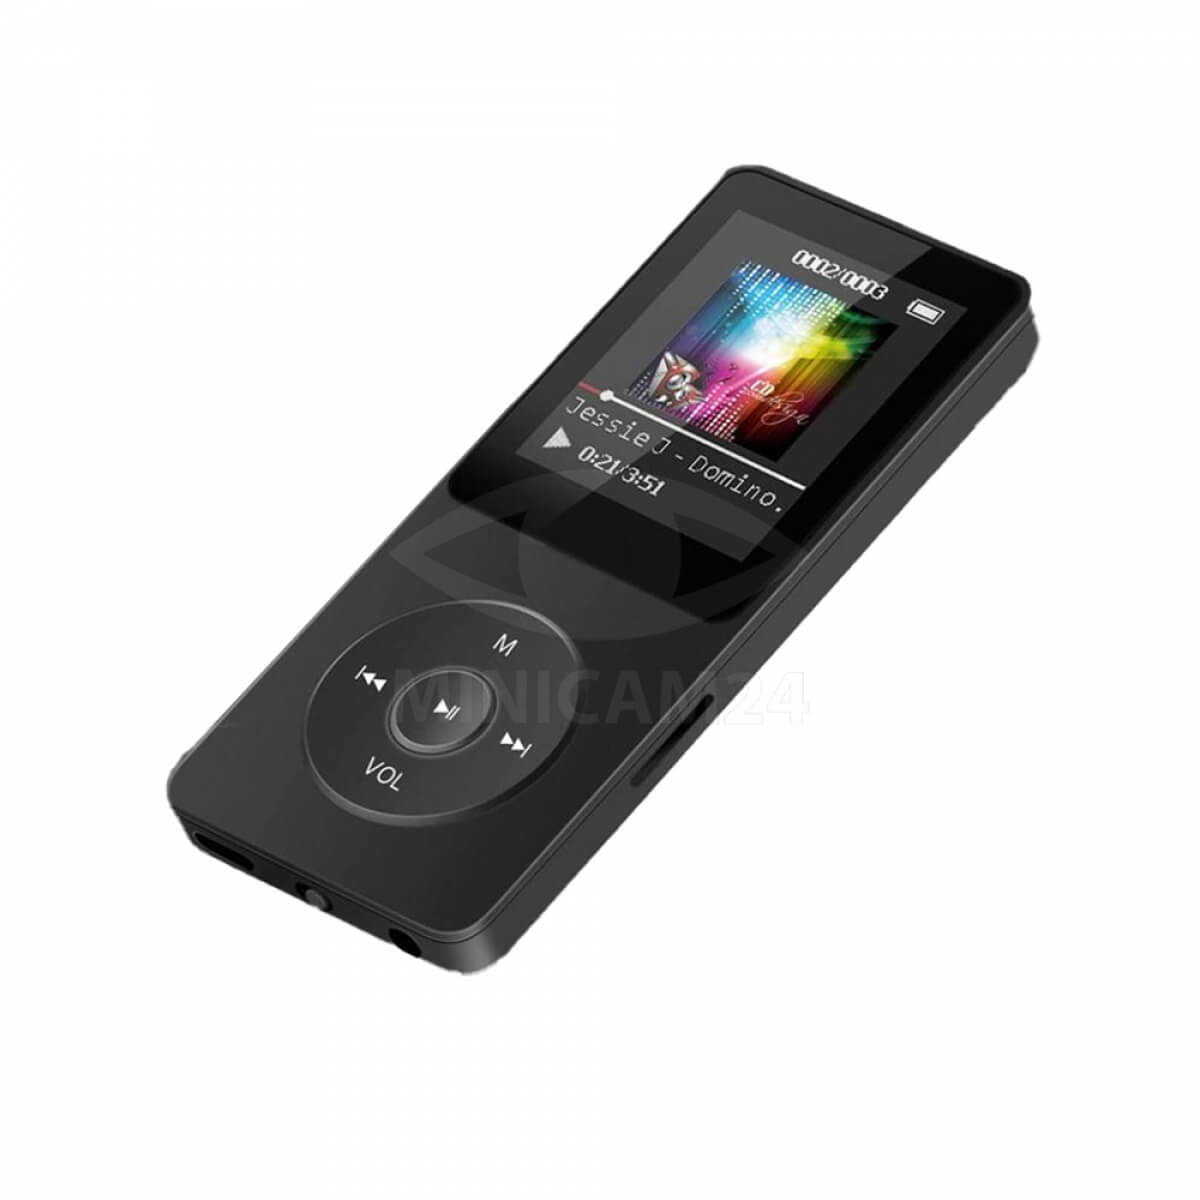 MP3-плеер с сенсорным экраном COWON D2 теперь в новых расцветках